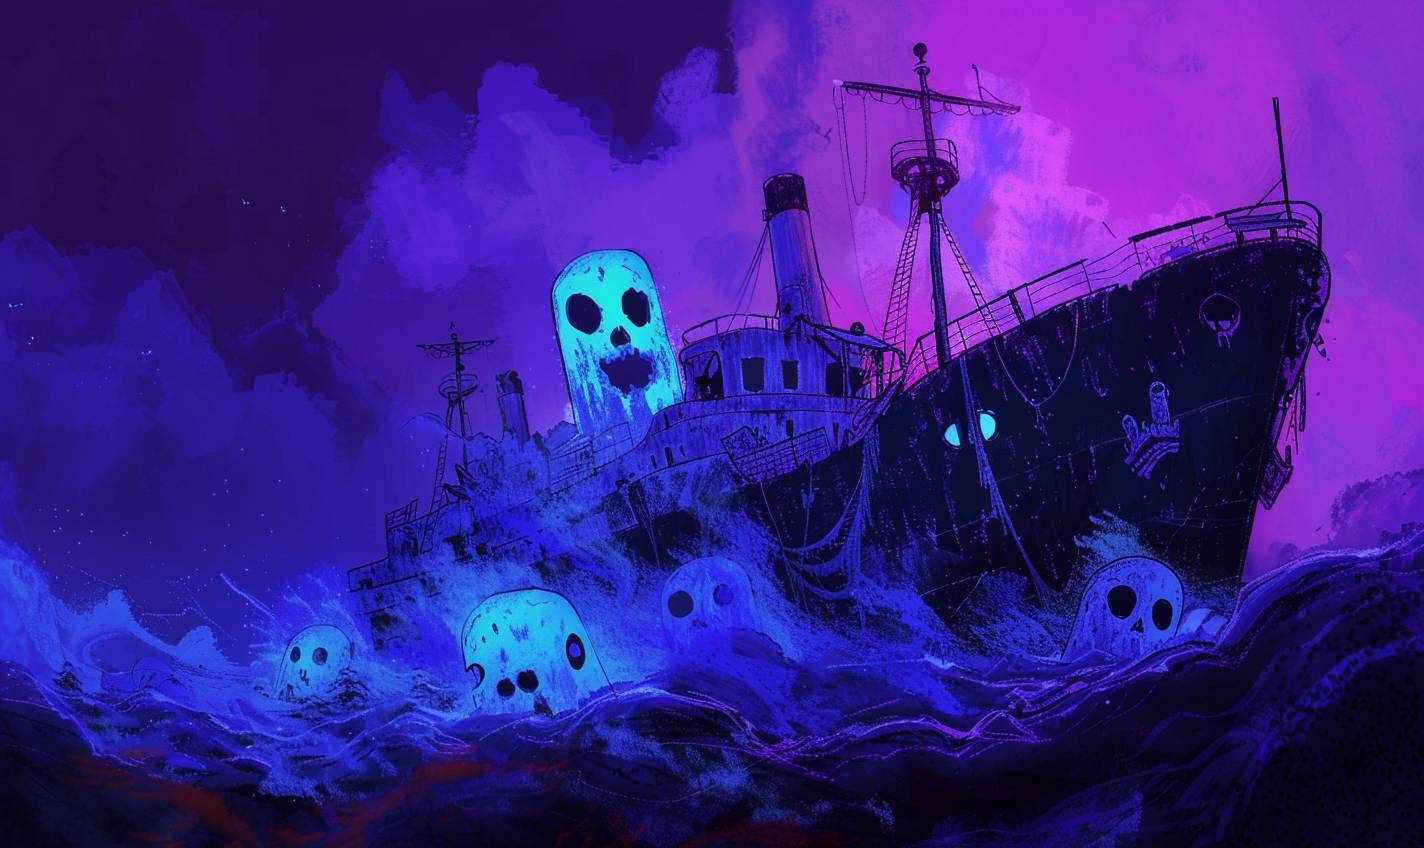 Allie Broshのスタイルで、幽霊船が幽霊のいる岸に漂着する